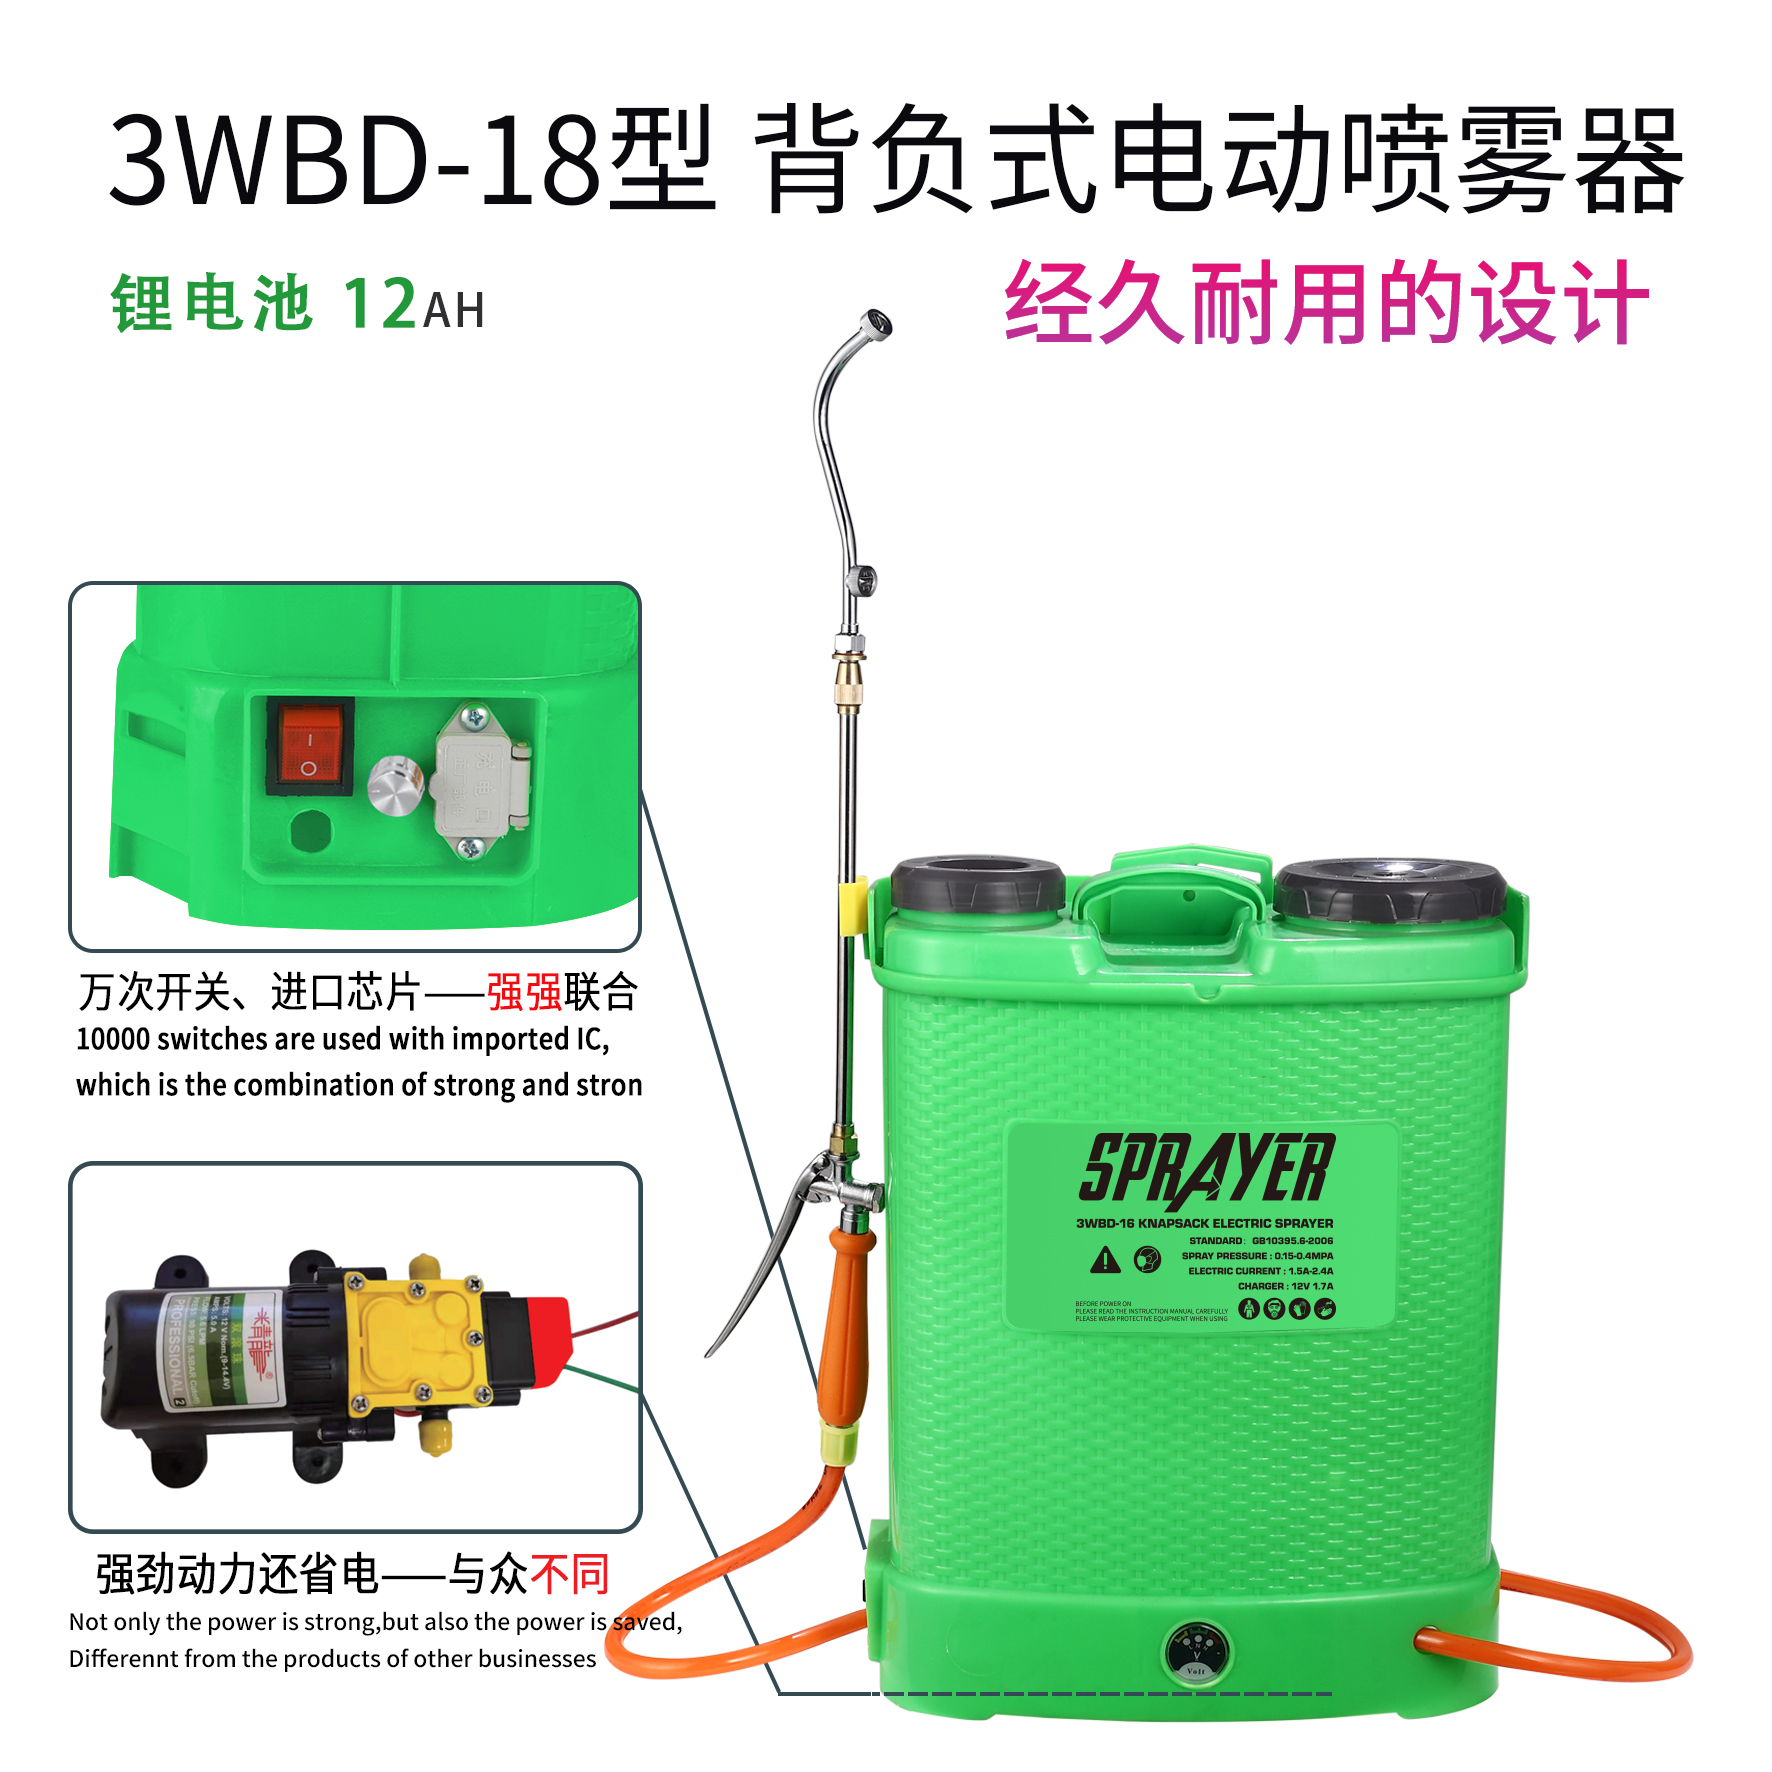 精龙电动喷雾器 旋钮调速 3WBD-18型 背负式 电动喷雾器 锂电池12AH